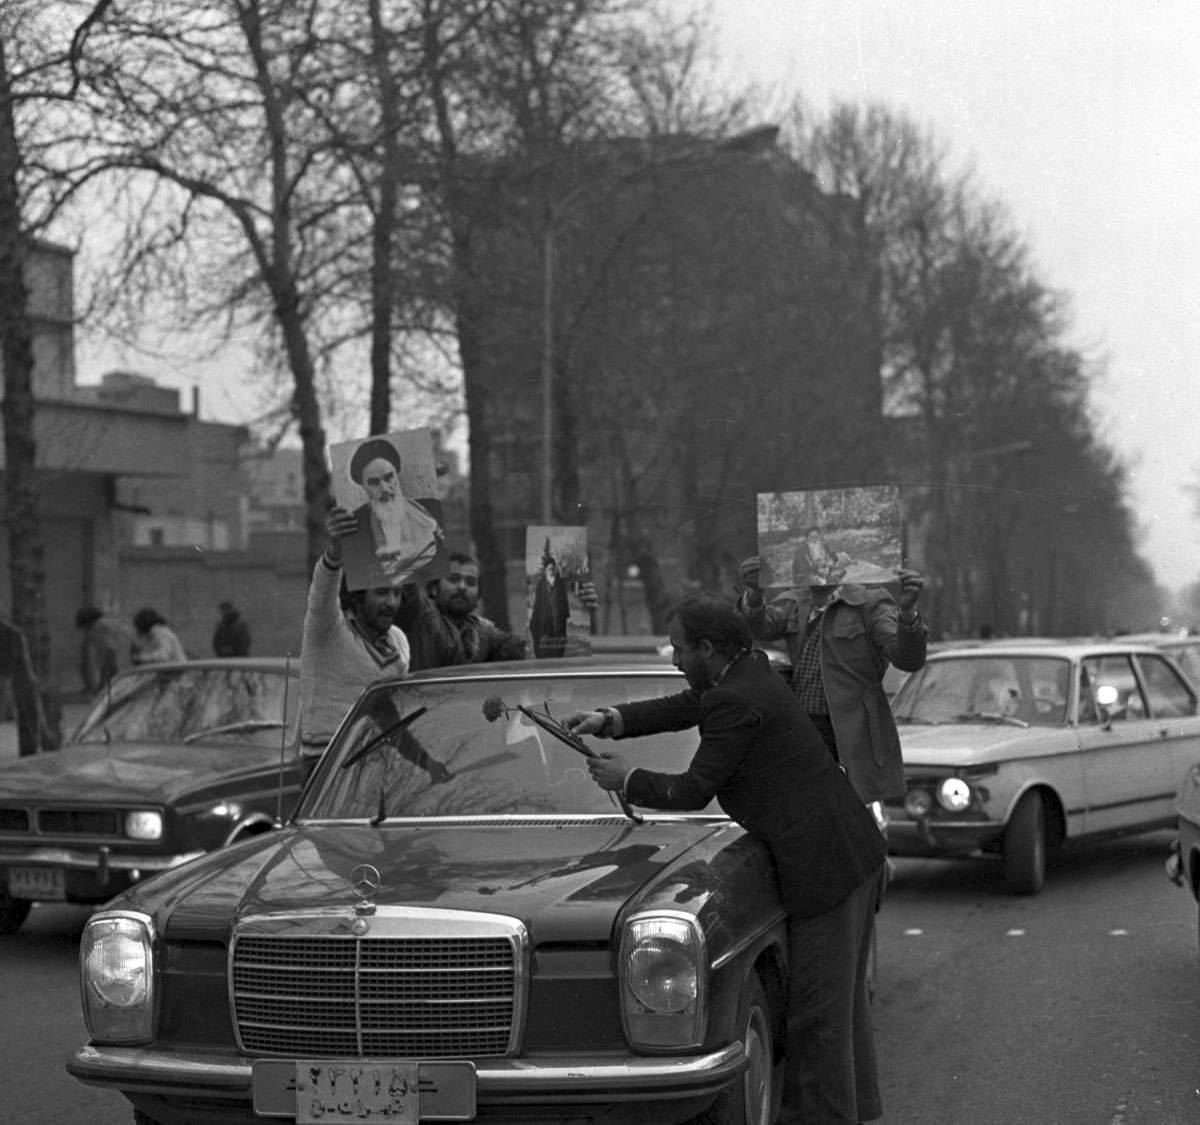 Former Iranian King, Mohammadreza Pahlavi, left Iran on 16 January 1979